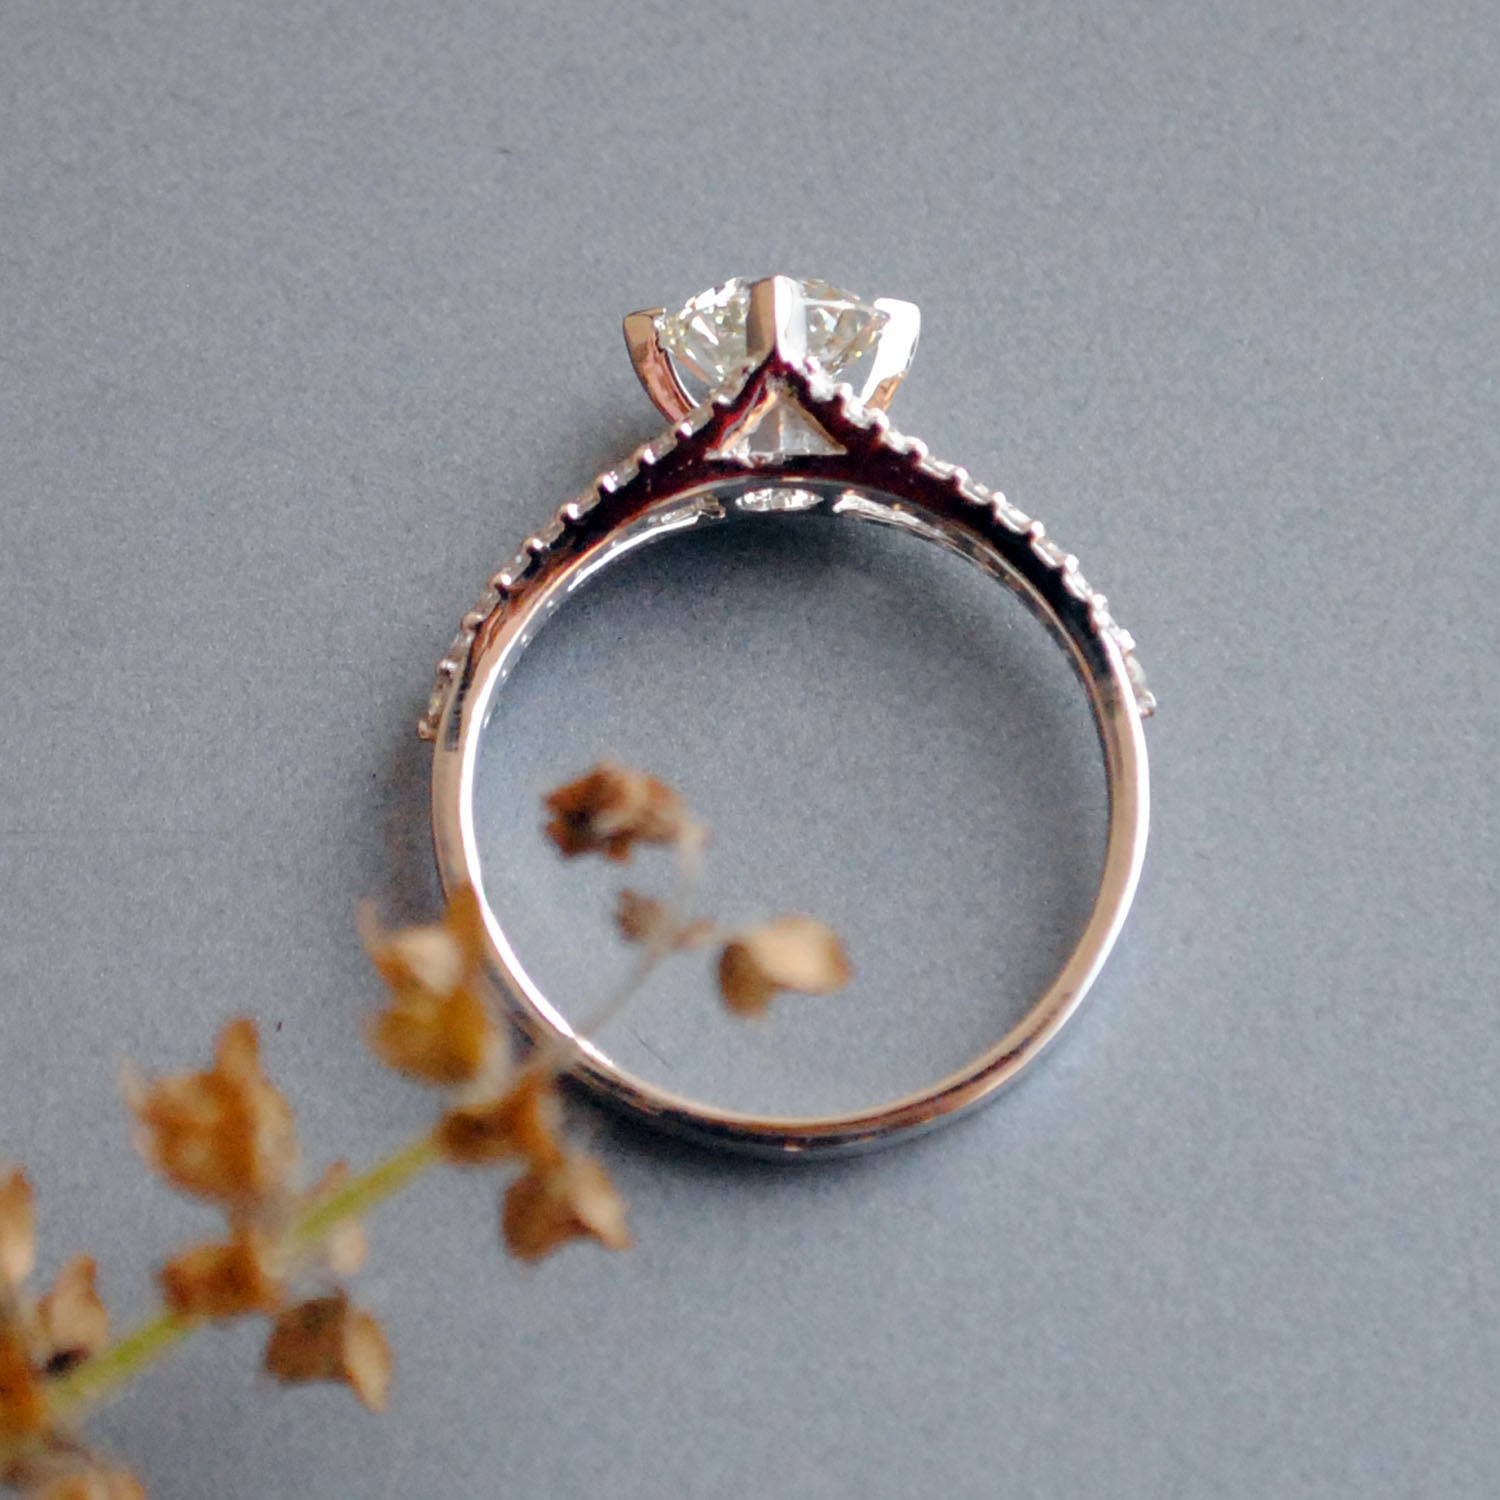 Design your own engagement ring Swan inspired split shank pavé diamond